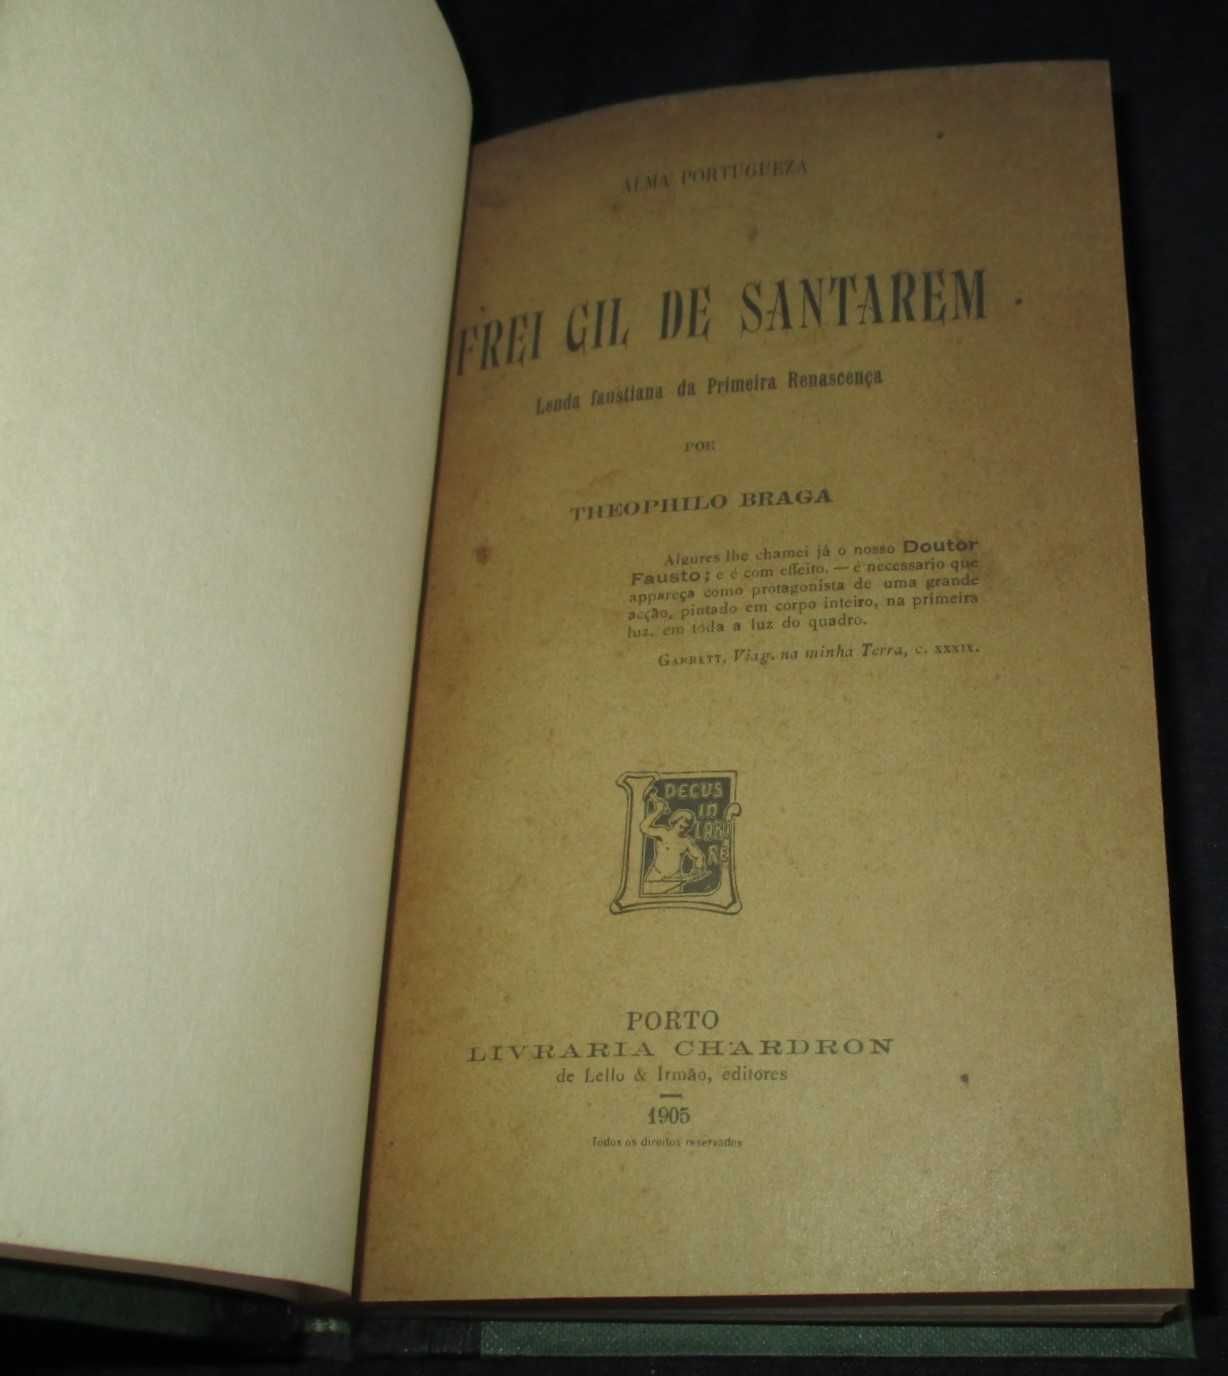 Livro Frei Gil de Santarém Lenda Faustiana Teófilo Braga 1905